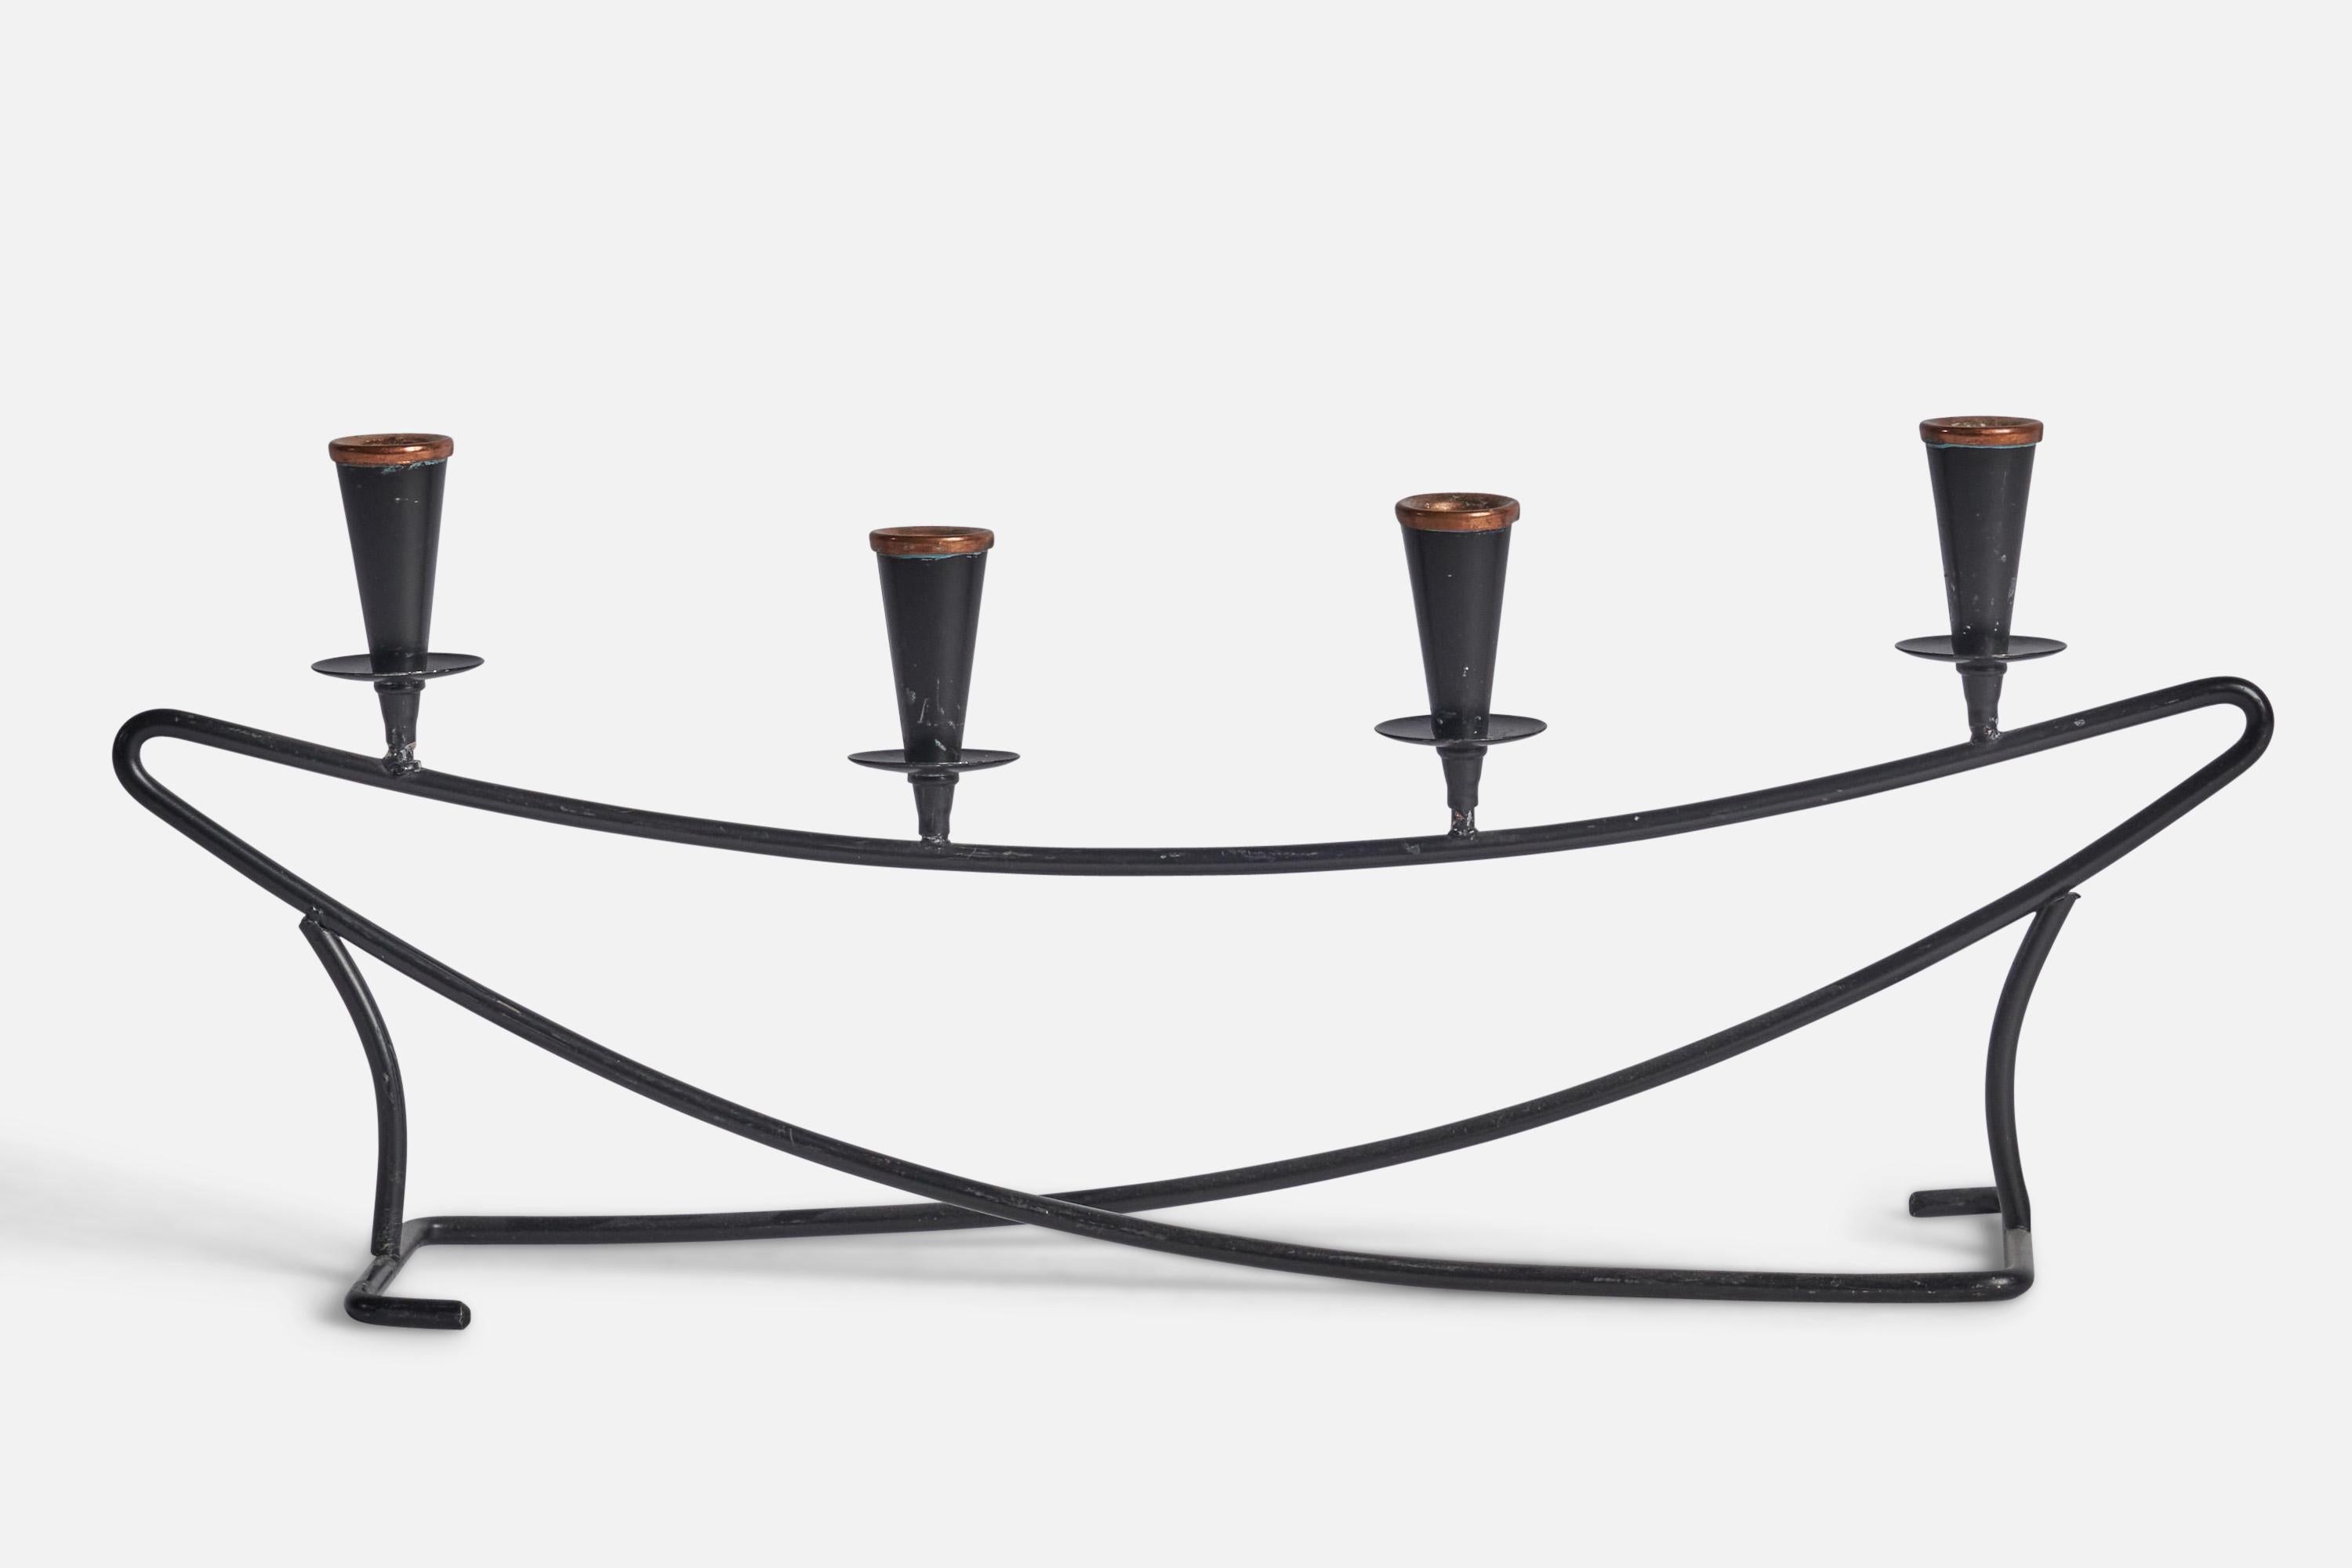 Ein Kandelaber aus schwarz lackiertem Metall und Messing, entworfen und hergestellt in Schweden, 1950er Jahre.

Passend für Kerzen mit 0.5